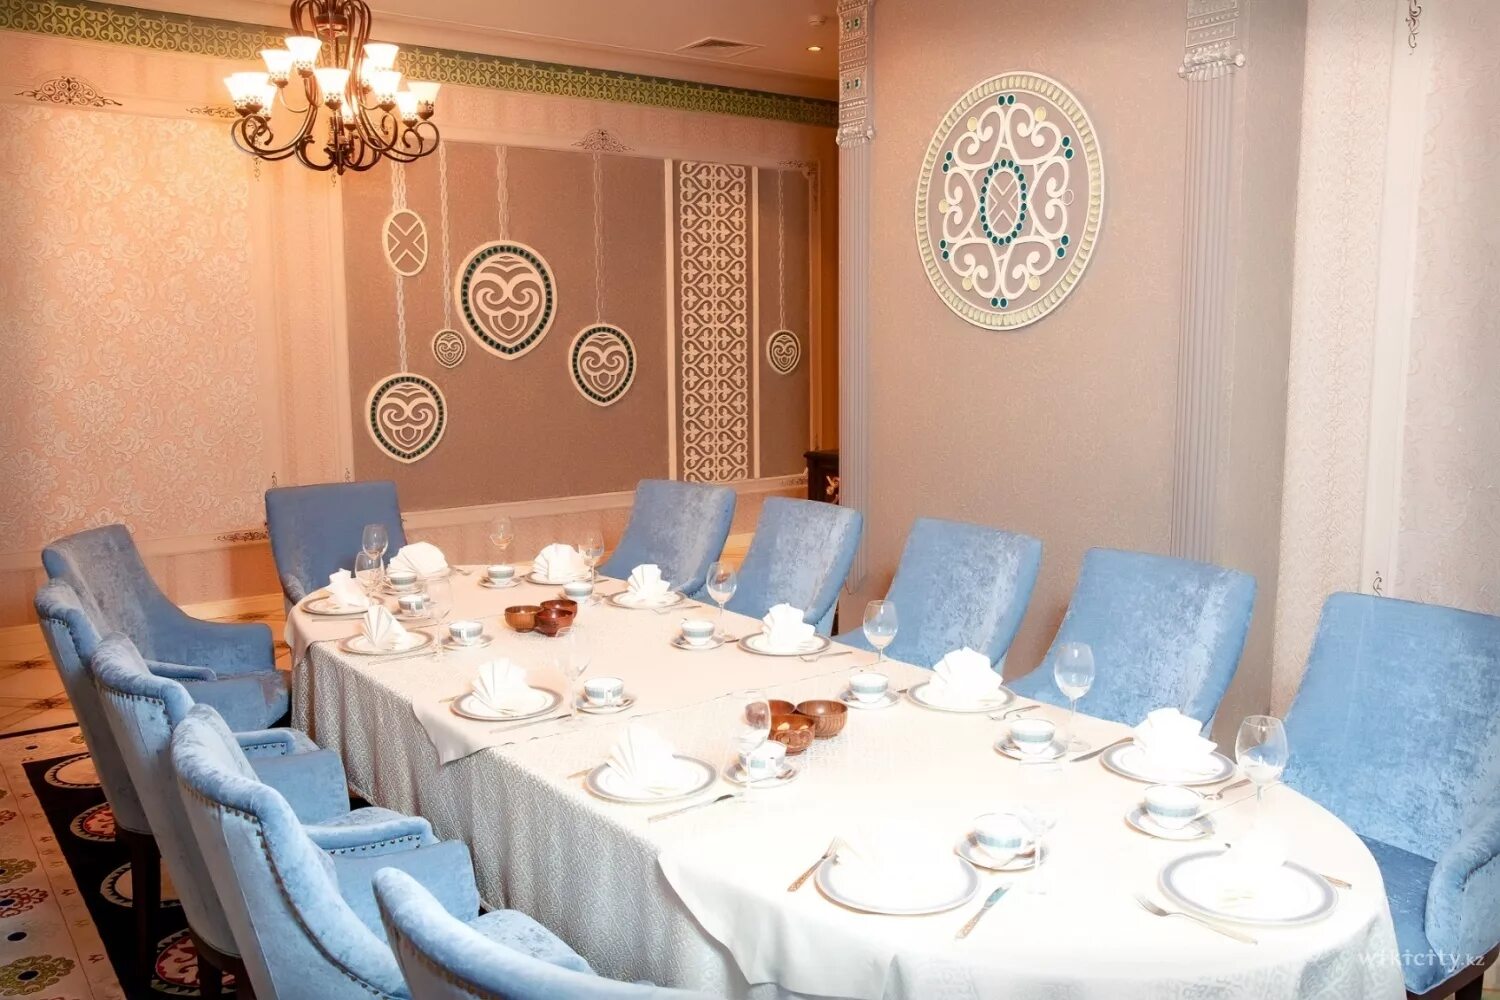 Ресторан казахской кухни. Кафе в казахском стиле. Ресторан в казахском стиле. Казахский интерьер для ресторана.